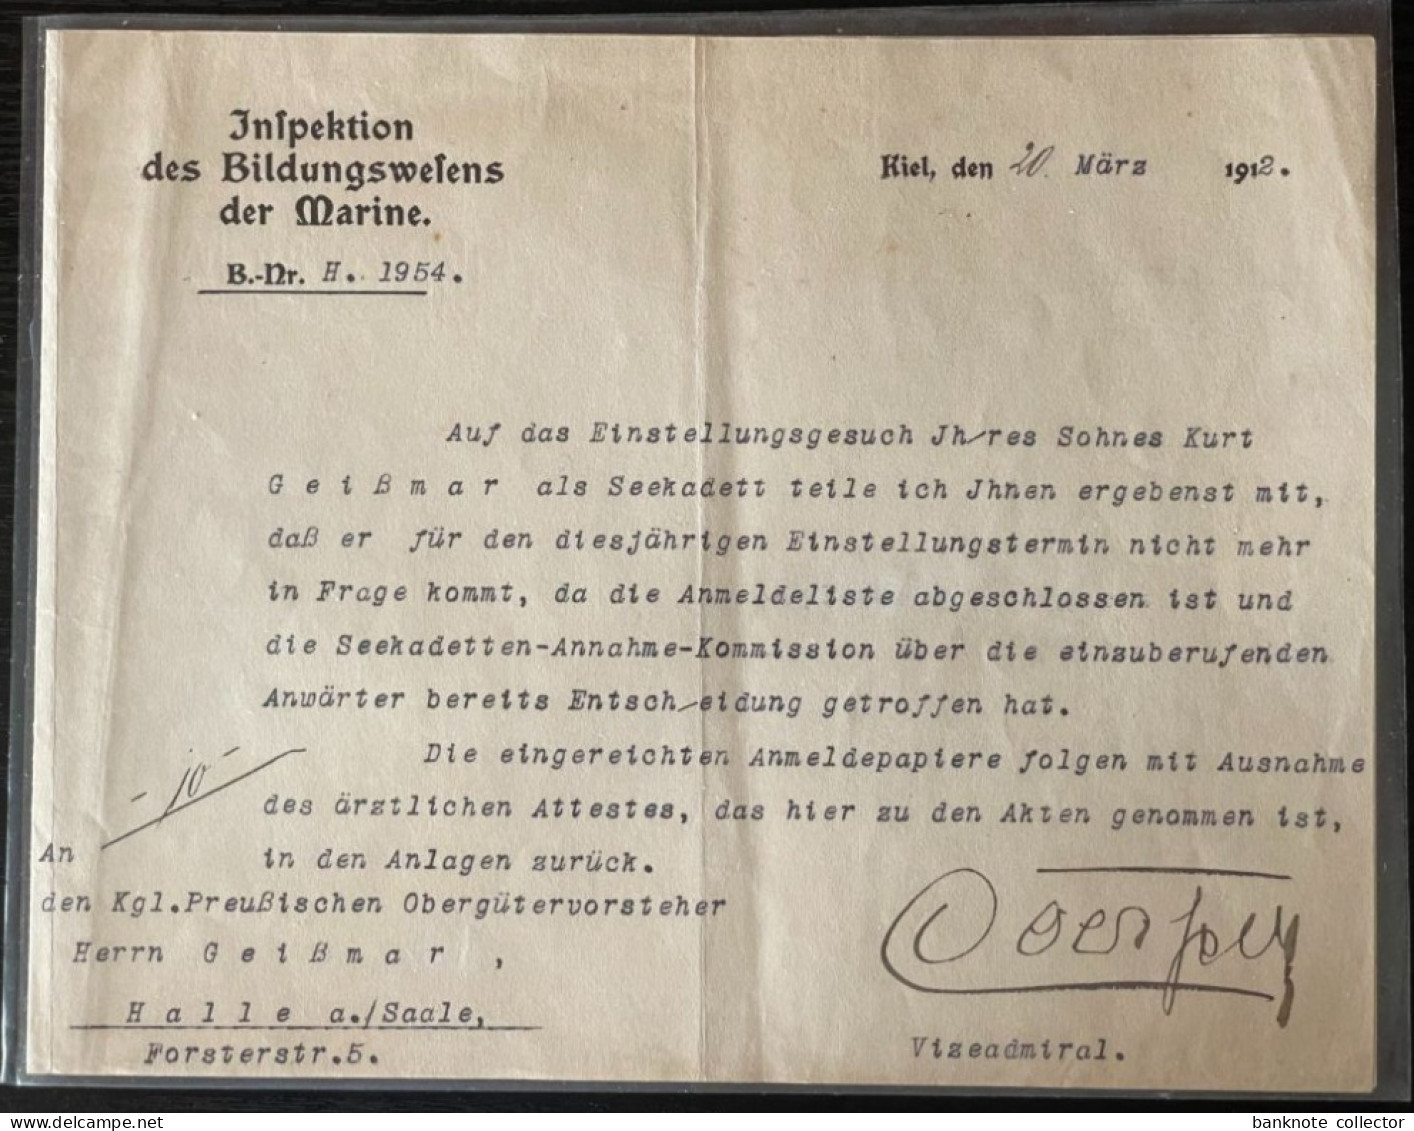 Deutschland, Germany - Rechnung der NSDAP und viele andere Dokumente !